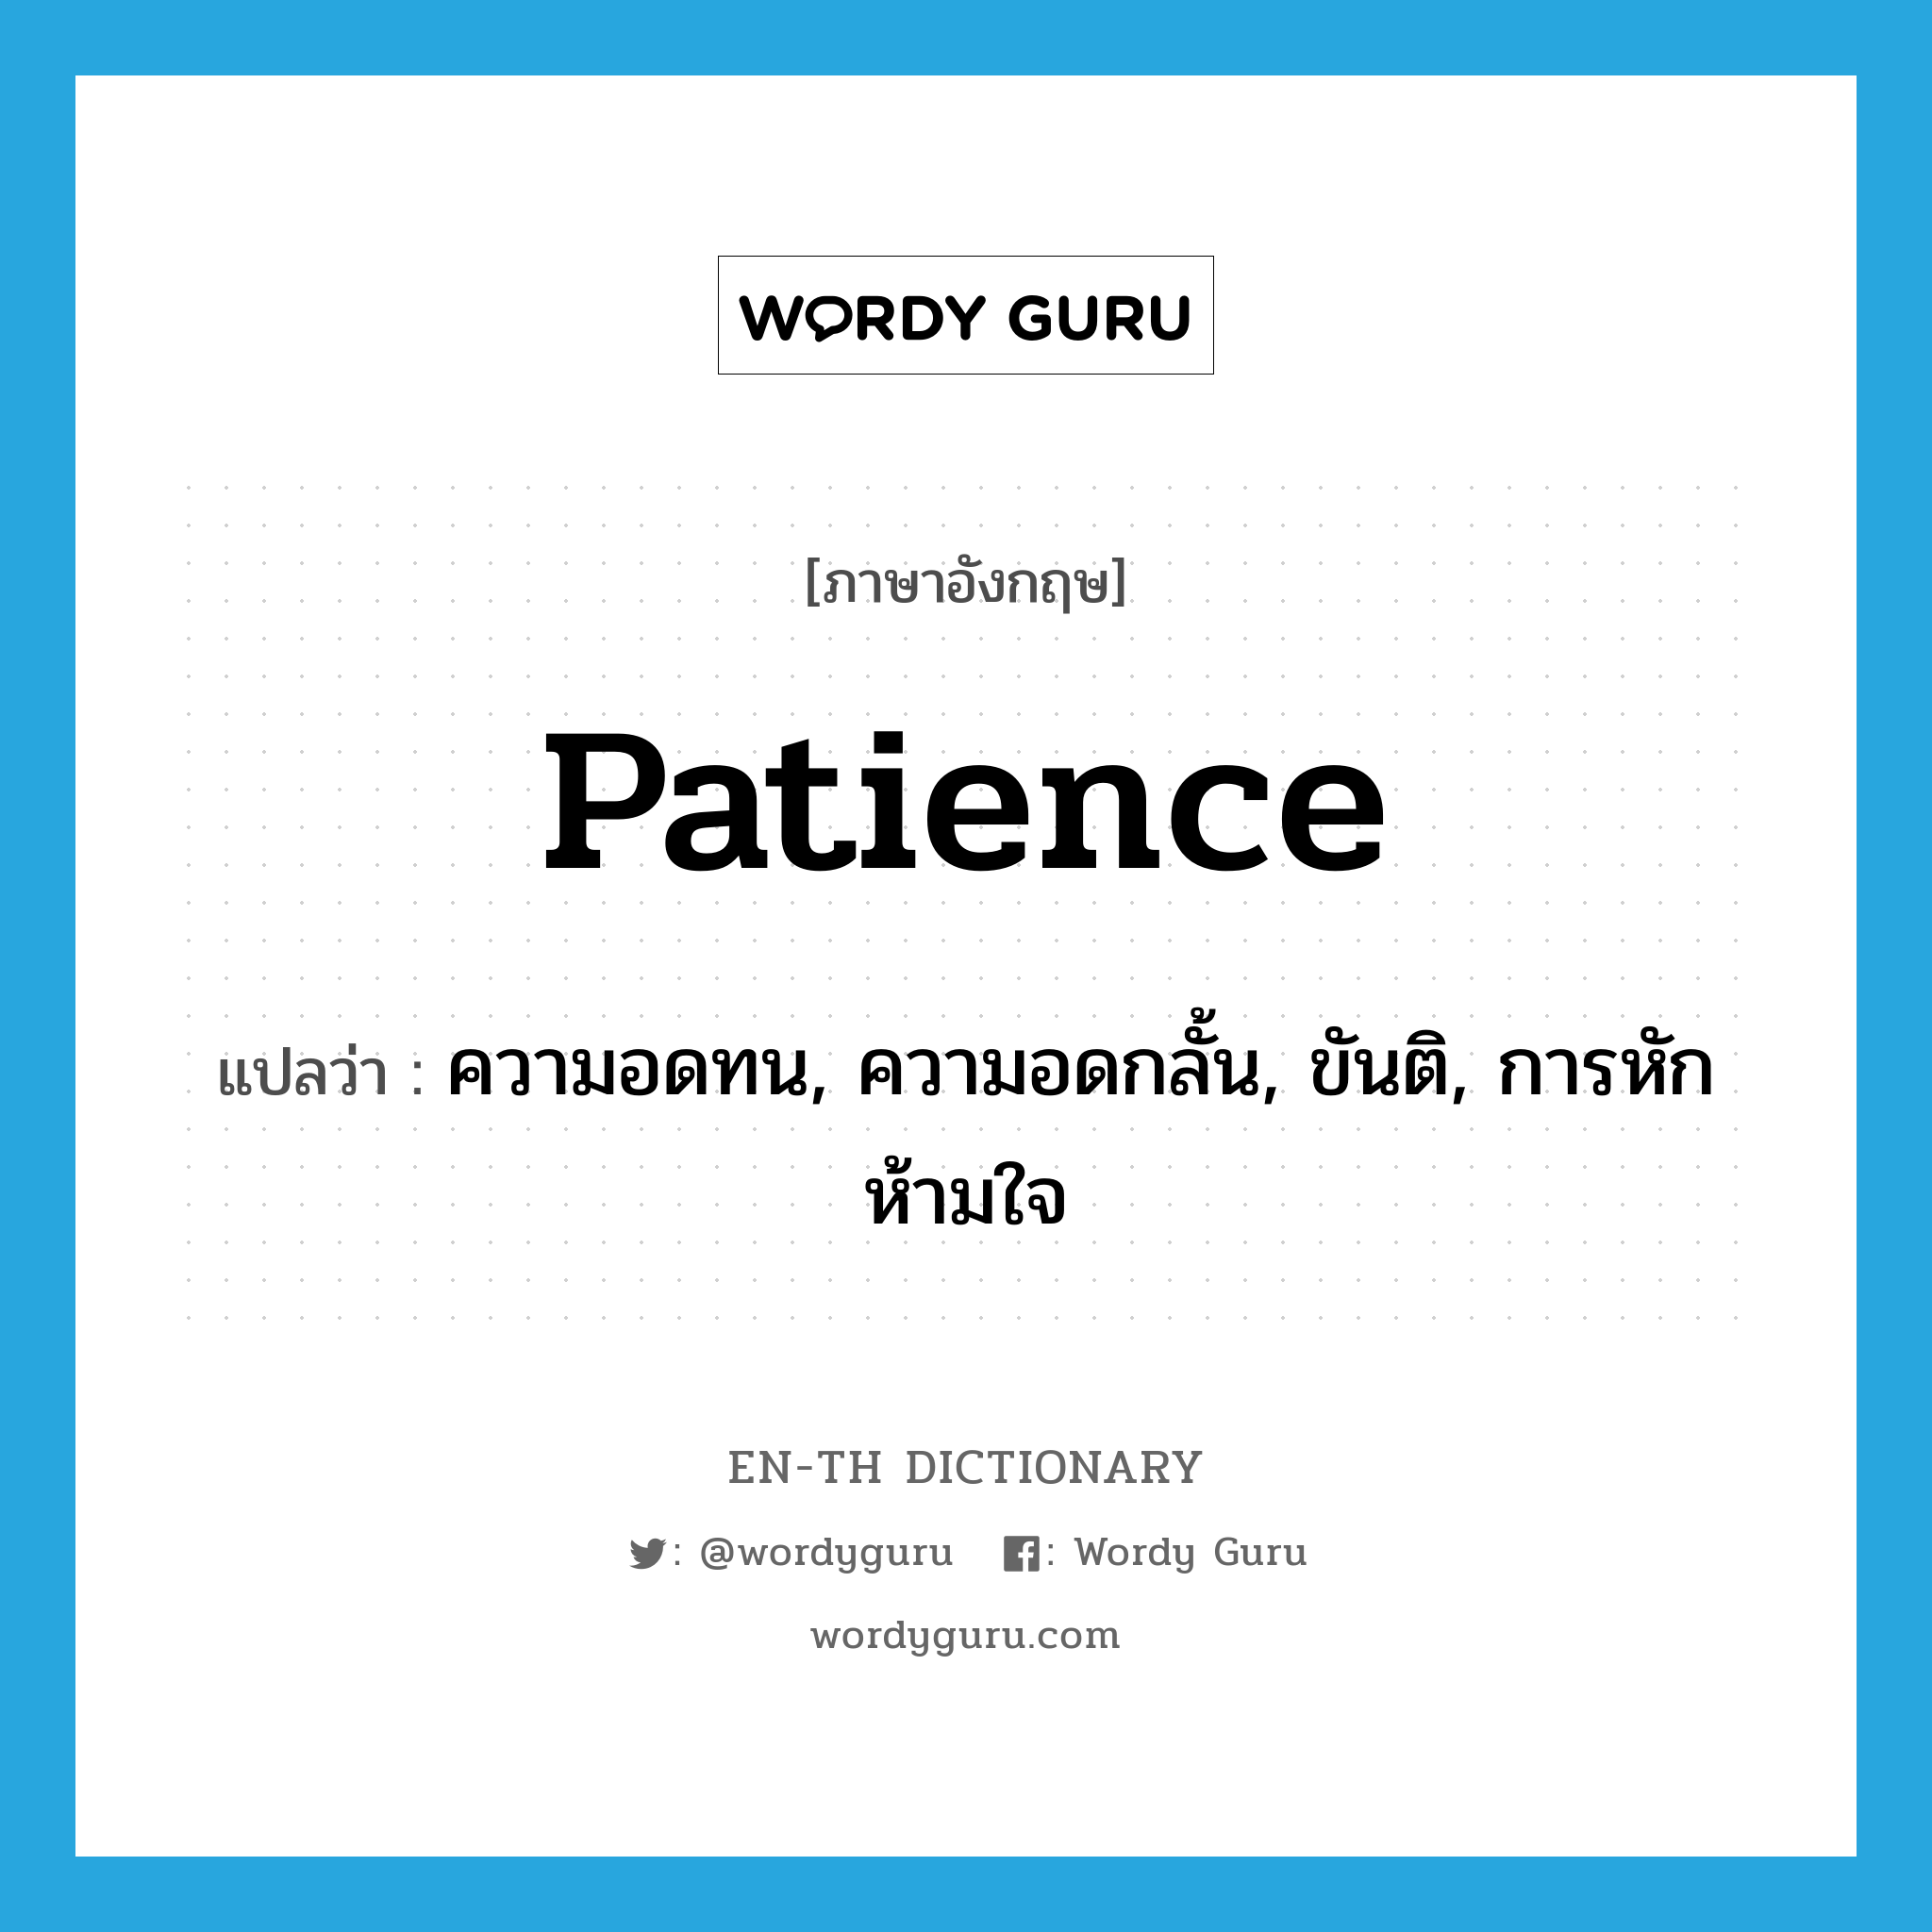 ความอดทน, ความอดกลั้น, ขันติ, การหักห้ามใจ ภาษาอังกฤษ?, คำศัพท์ภาษาอังกฤษ ความอดทน, ความอดกลั้น, ขันติ, การหักห้ามใจ แปลว่า patience ประเภท N หมวด N